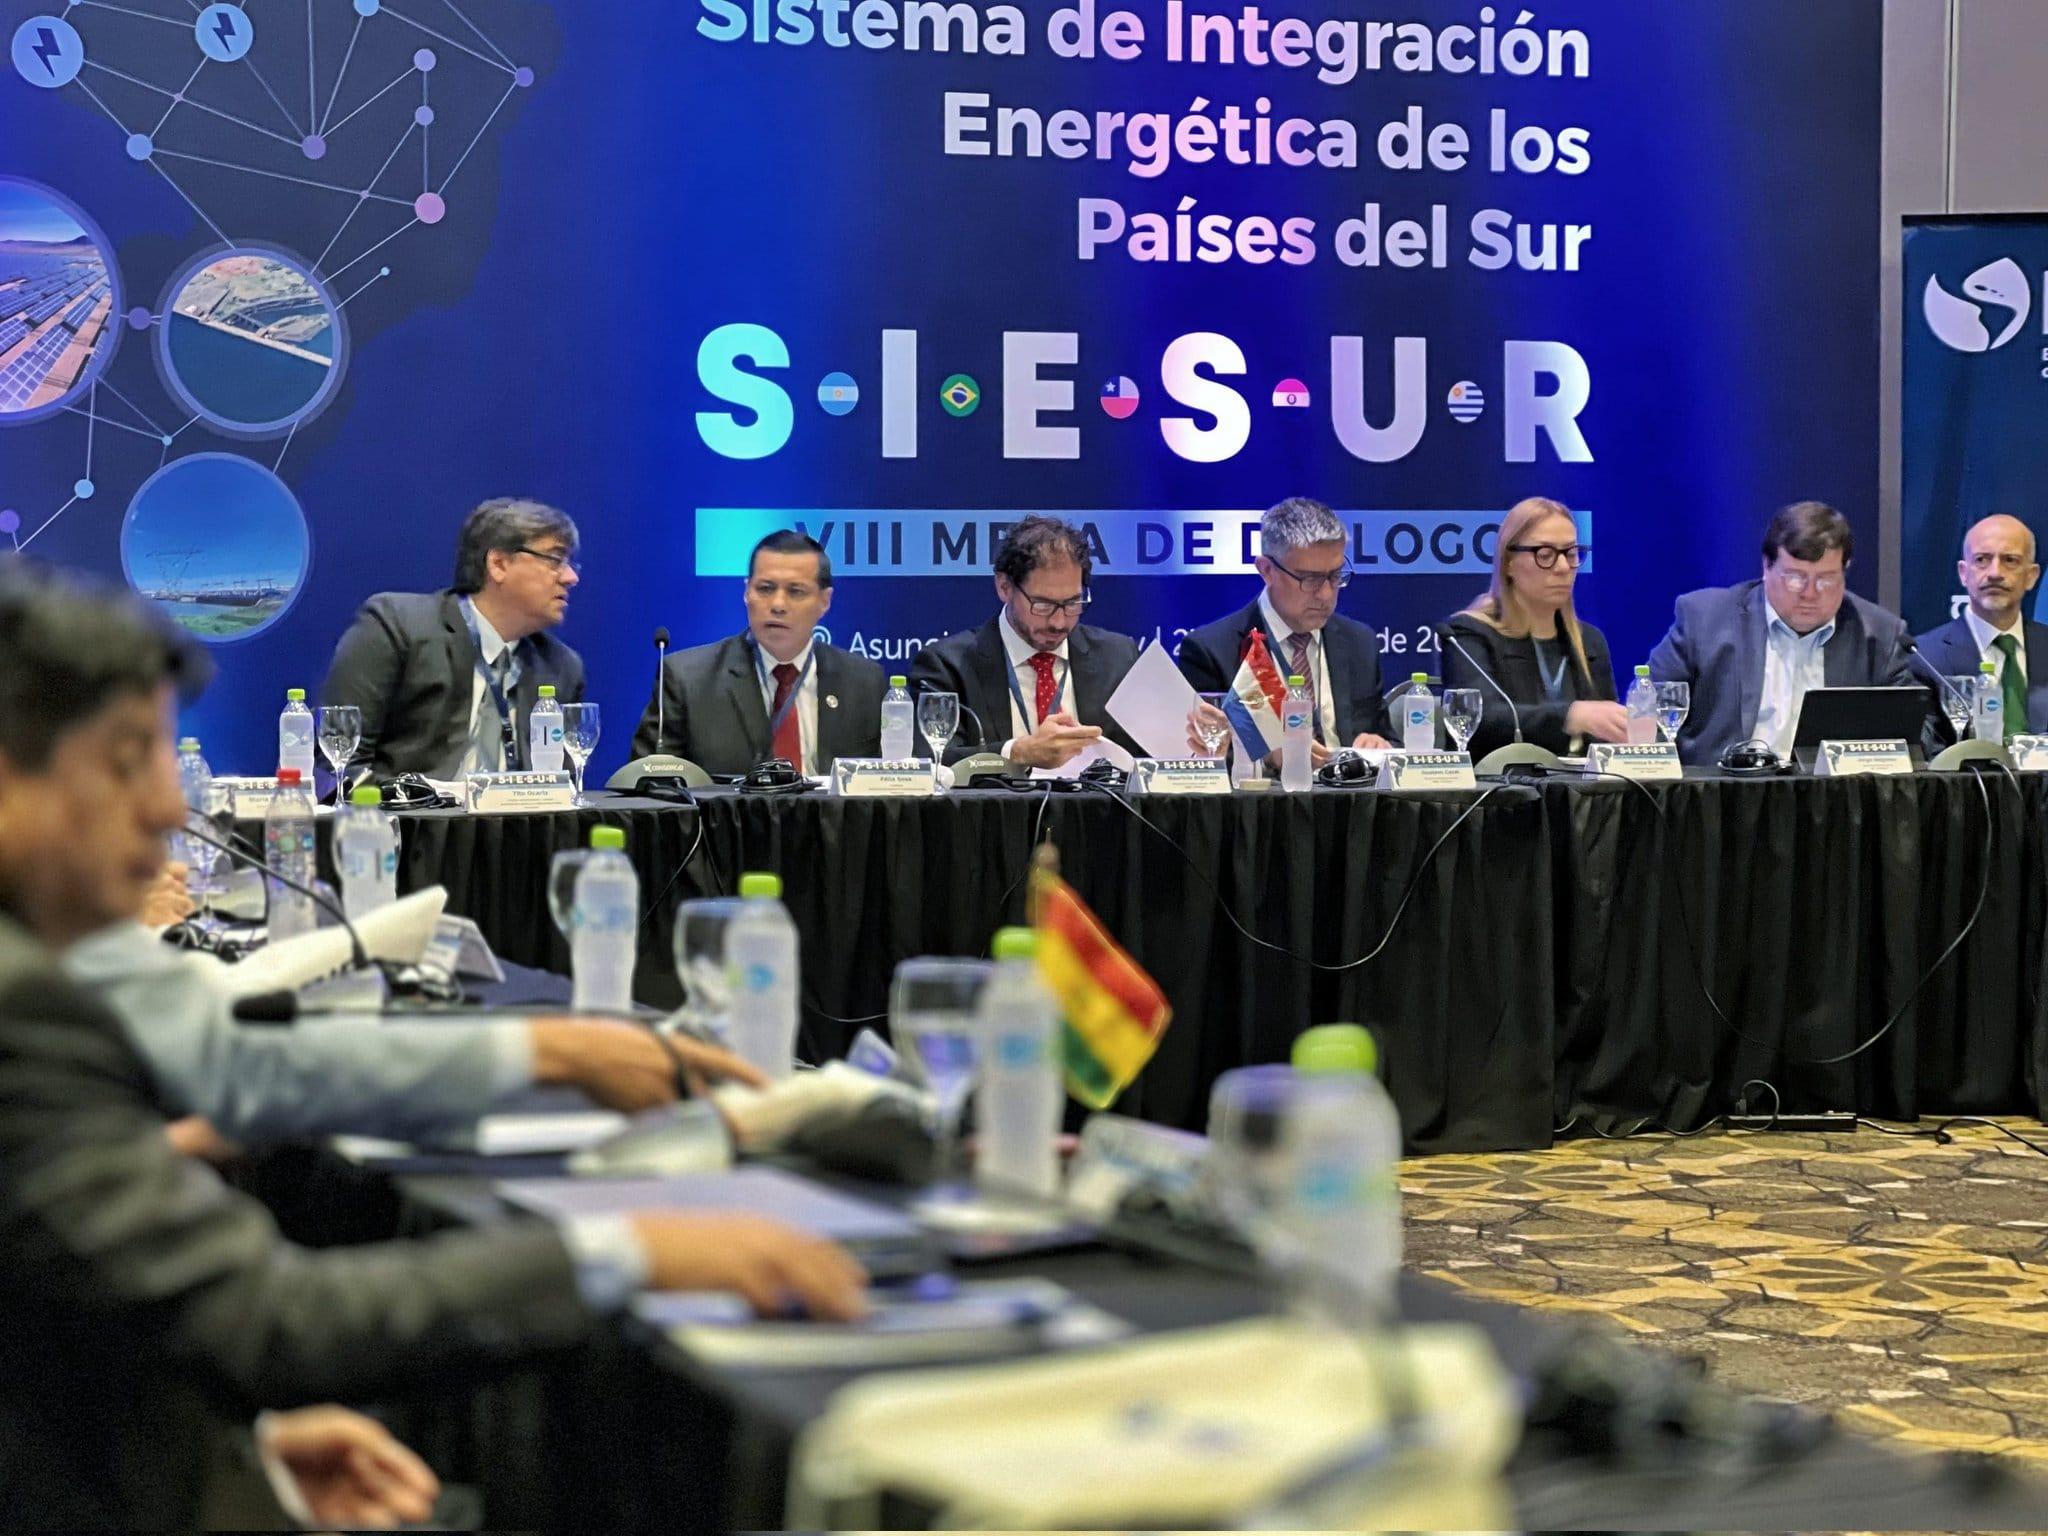 UTE participó de la VIII Mesa de Diálogo del Sistema de Integración Energética del Sur (SIESUR) realizada en Paraguay.